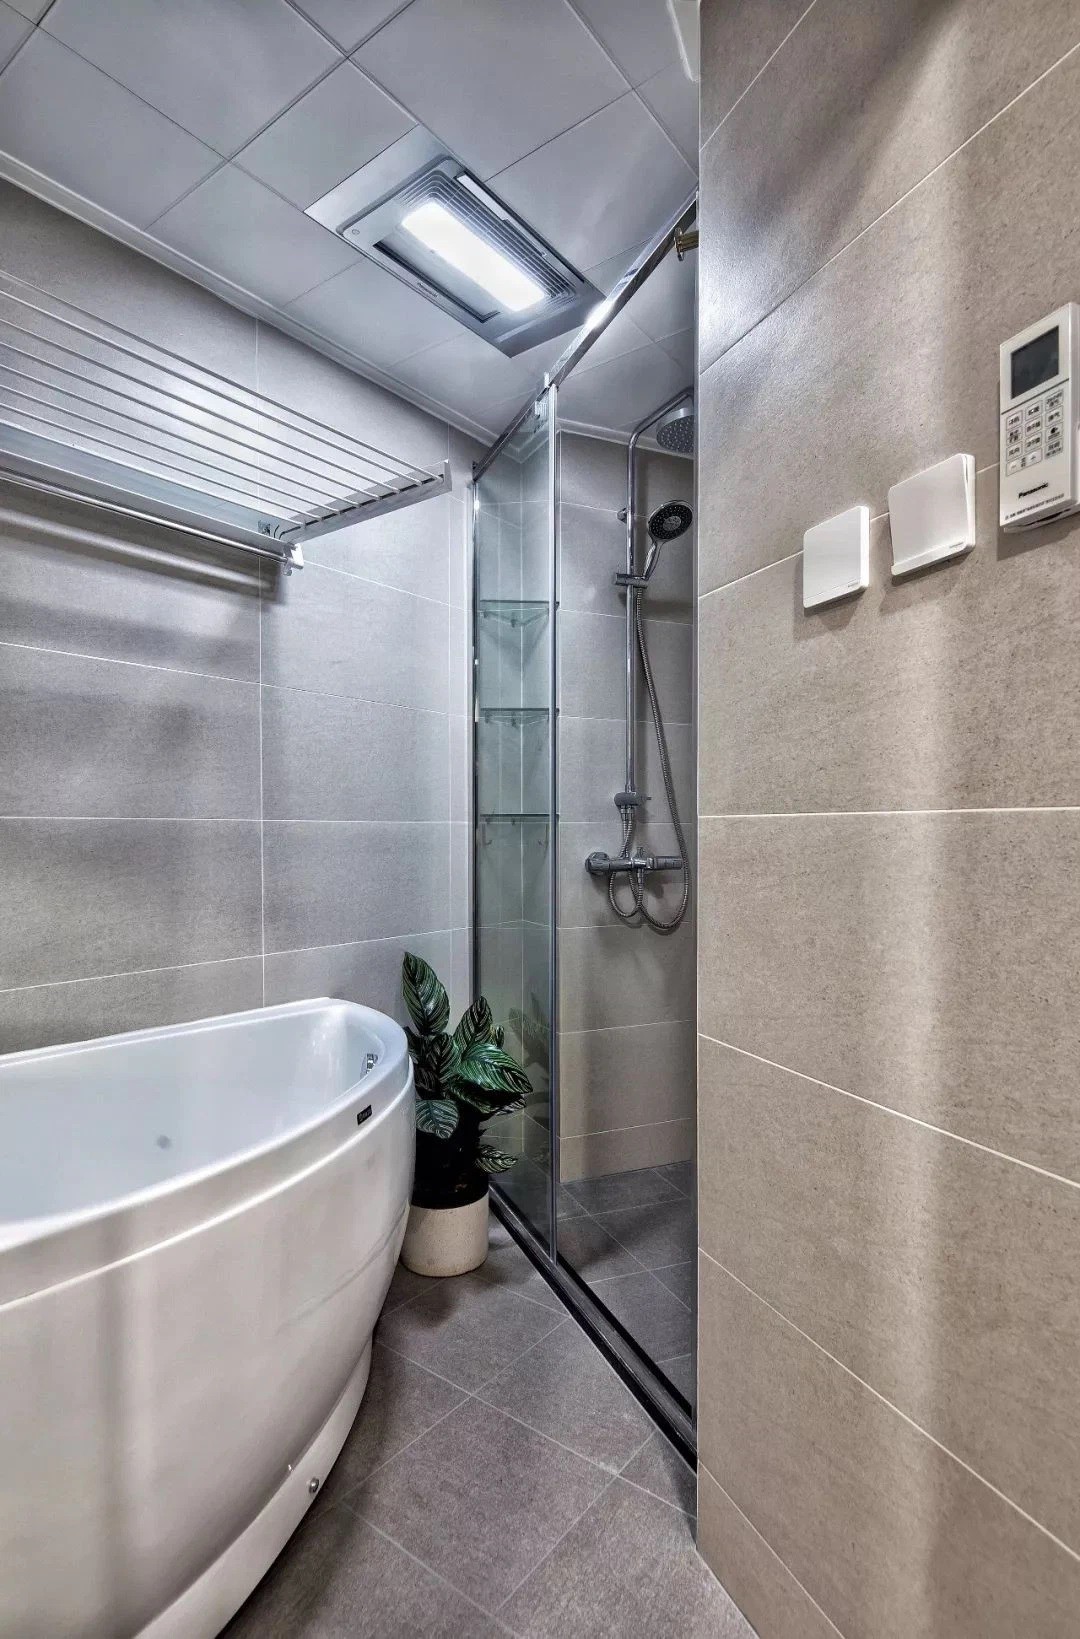 
Không gian phòng tắm hiện đại, đầy đủ tiện nghi
